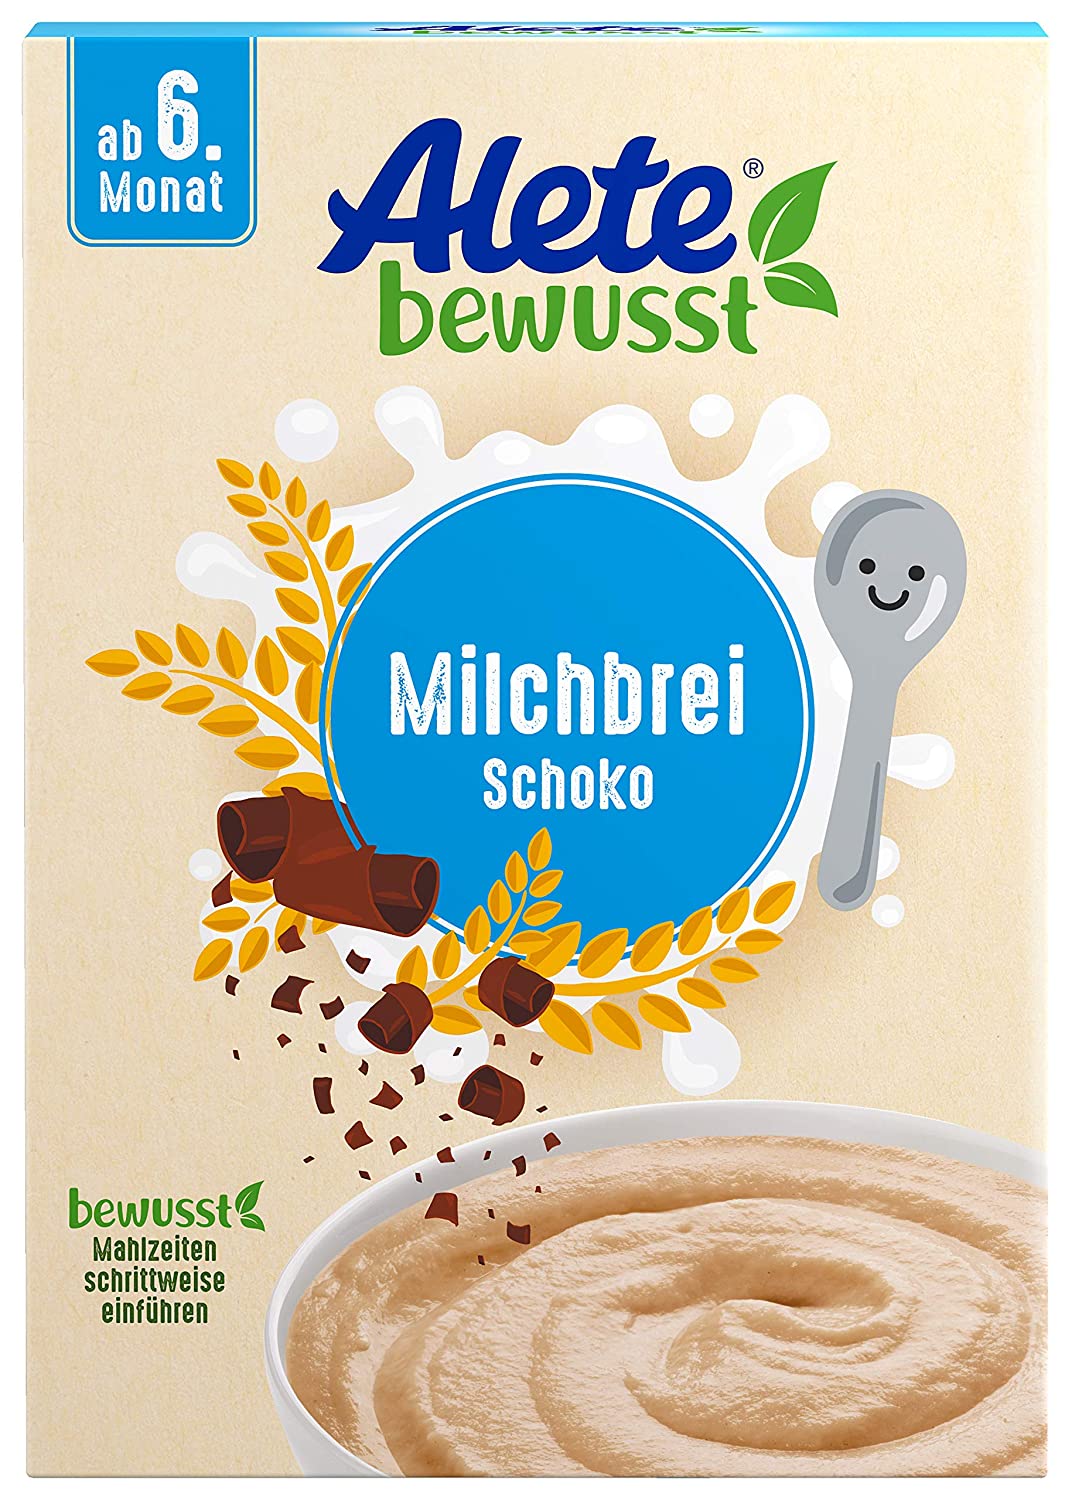 Alete bewusst Milchbrei Schoko, ab dem 6. Monat, Babynahrung mit Weizengrieß, Kakaobutter & Vanille-Aroma, Milch-Getreidebrei für morgens & abends, 400 g